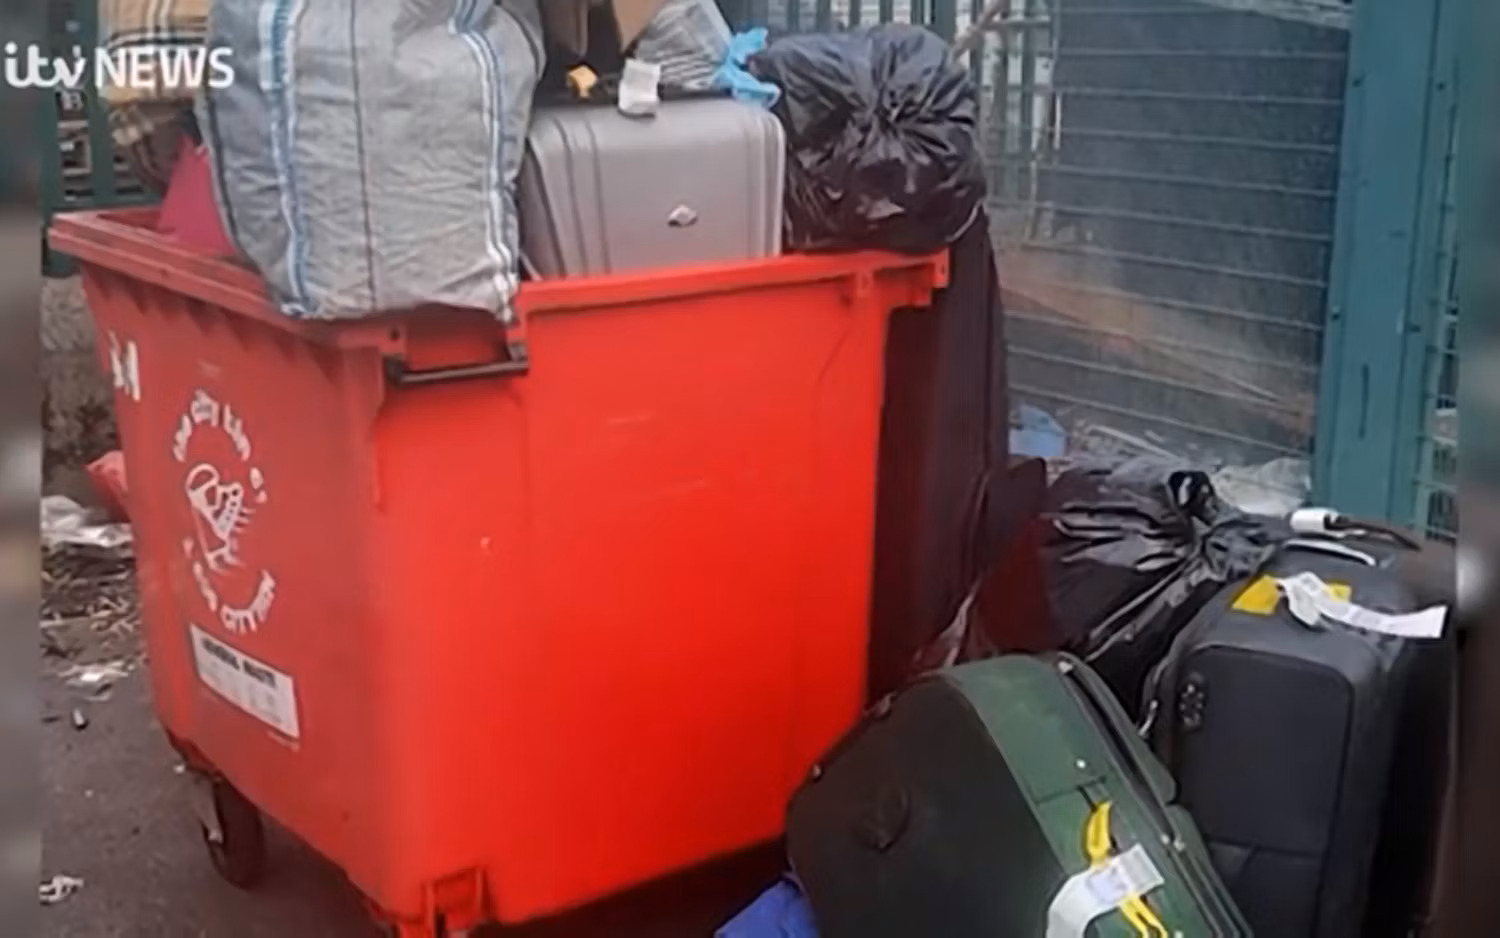 Aeroporto Dublino - Bagagli nella spazzatura